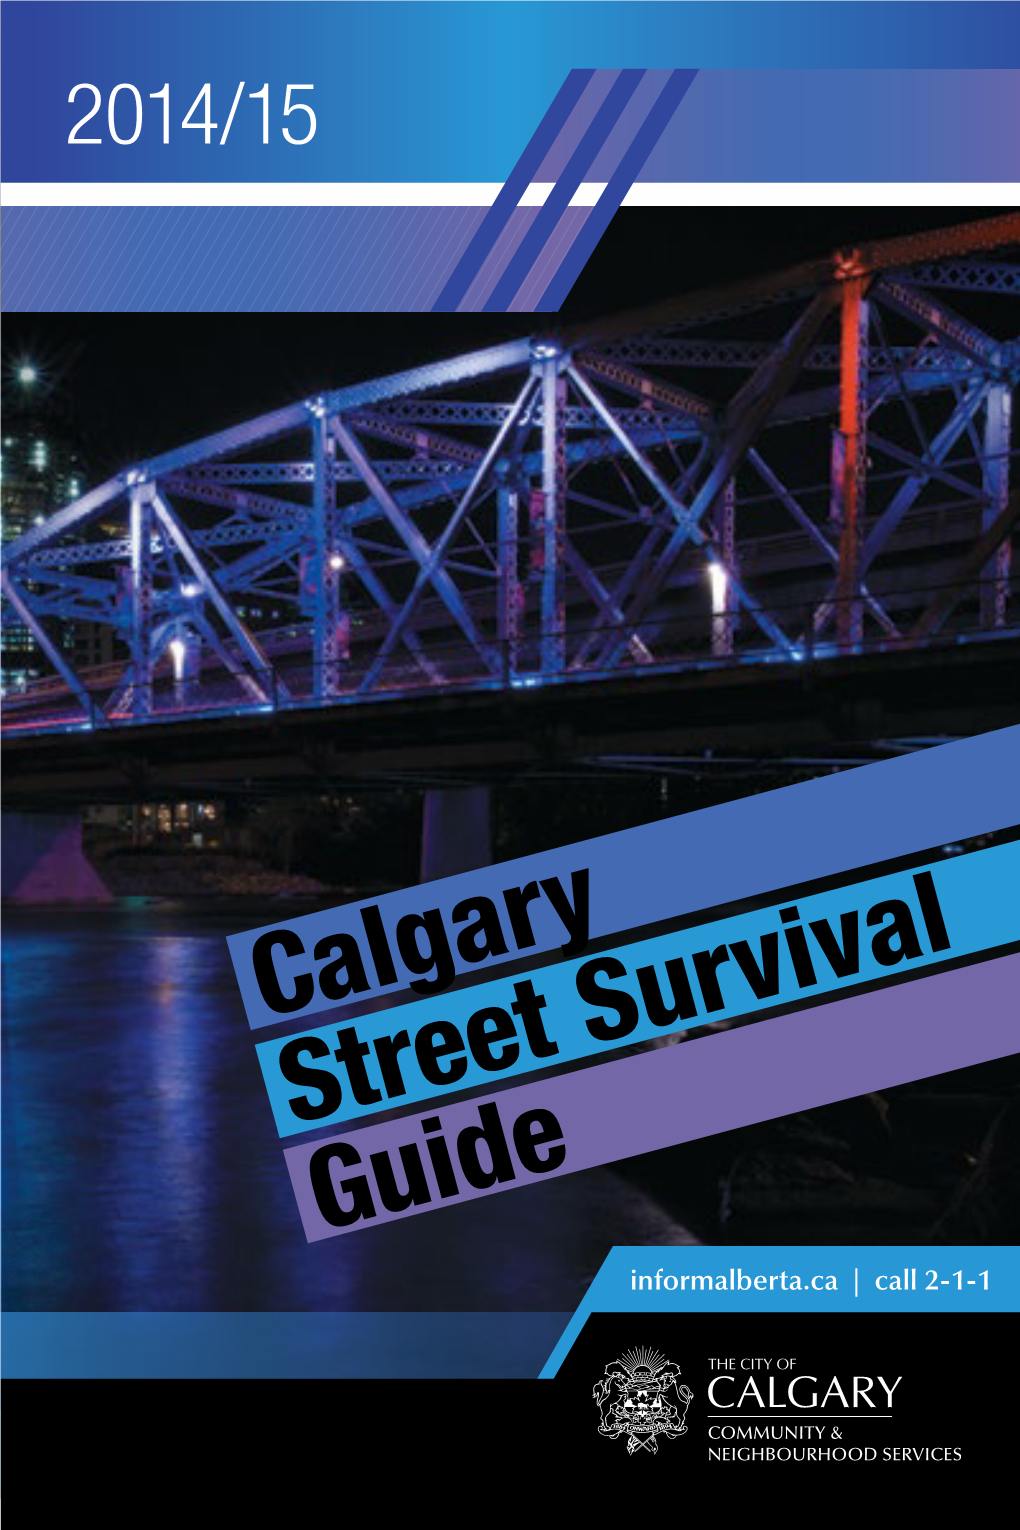 Calgary Street Survival Guide Informalberta.Ca | Call 2-1-1 REMEMBER